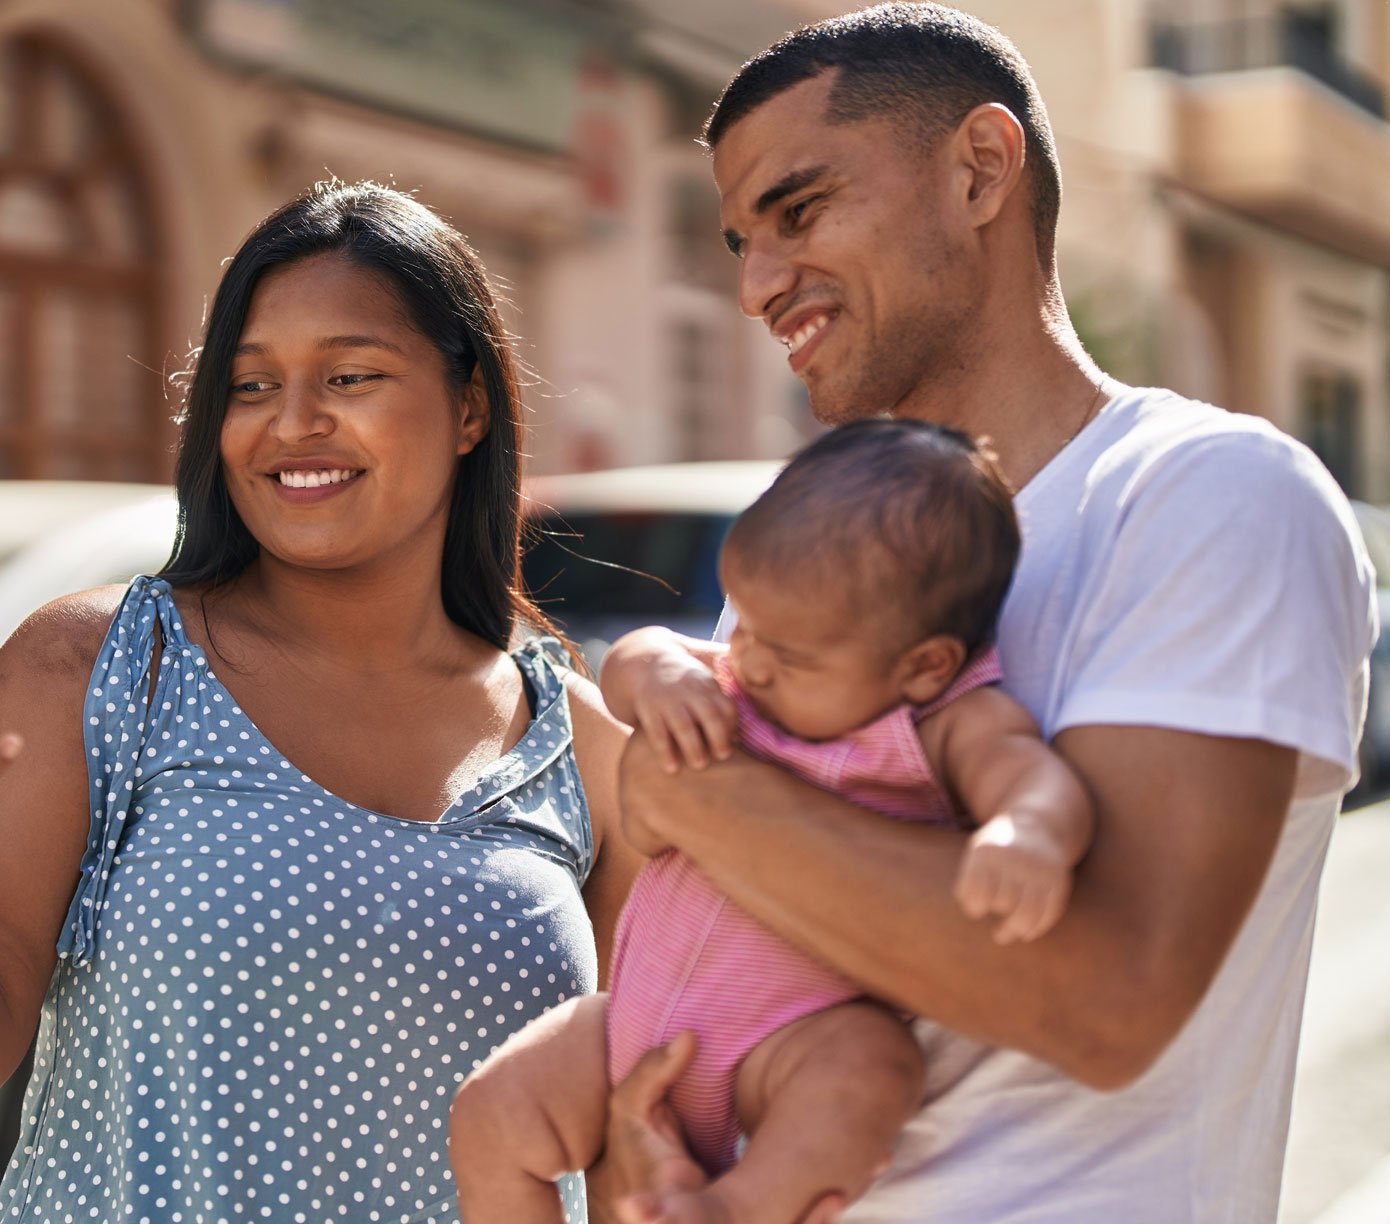 Familia latina sonriendo cuando descubre que Alianza puede ayudar con su situación financiera.